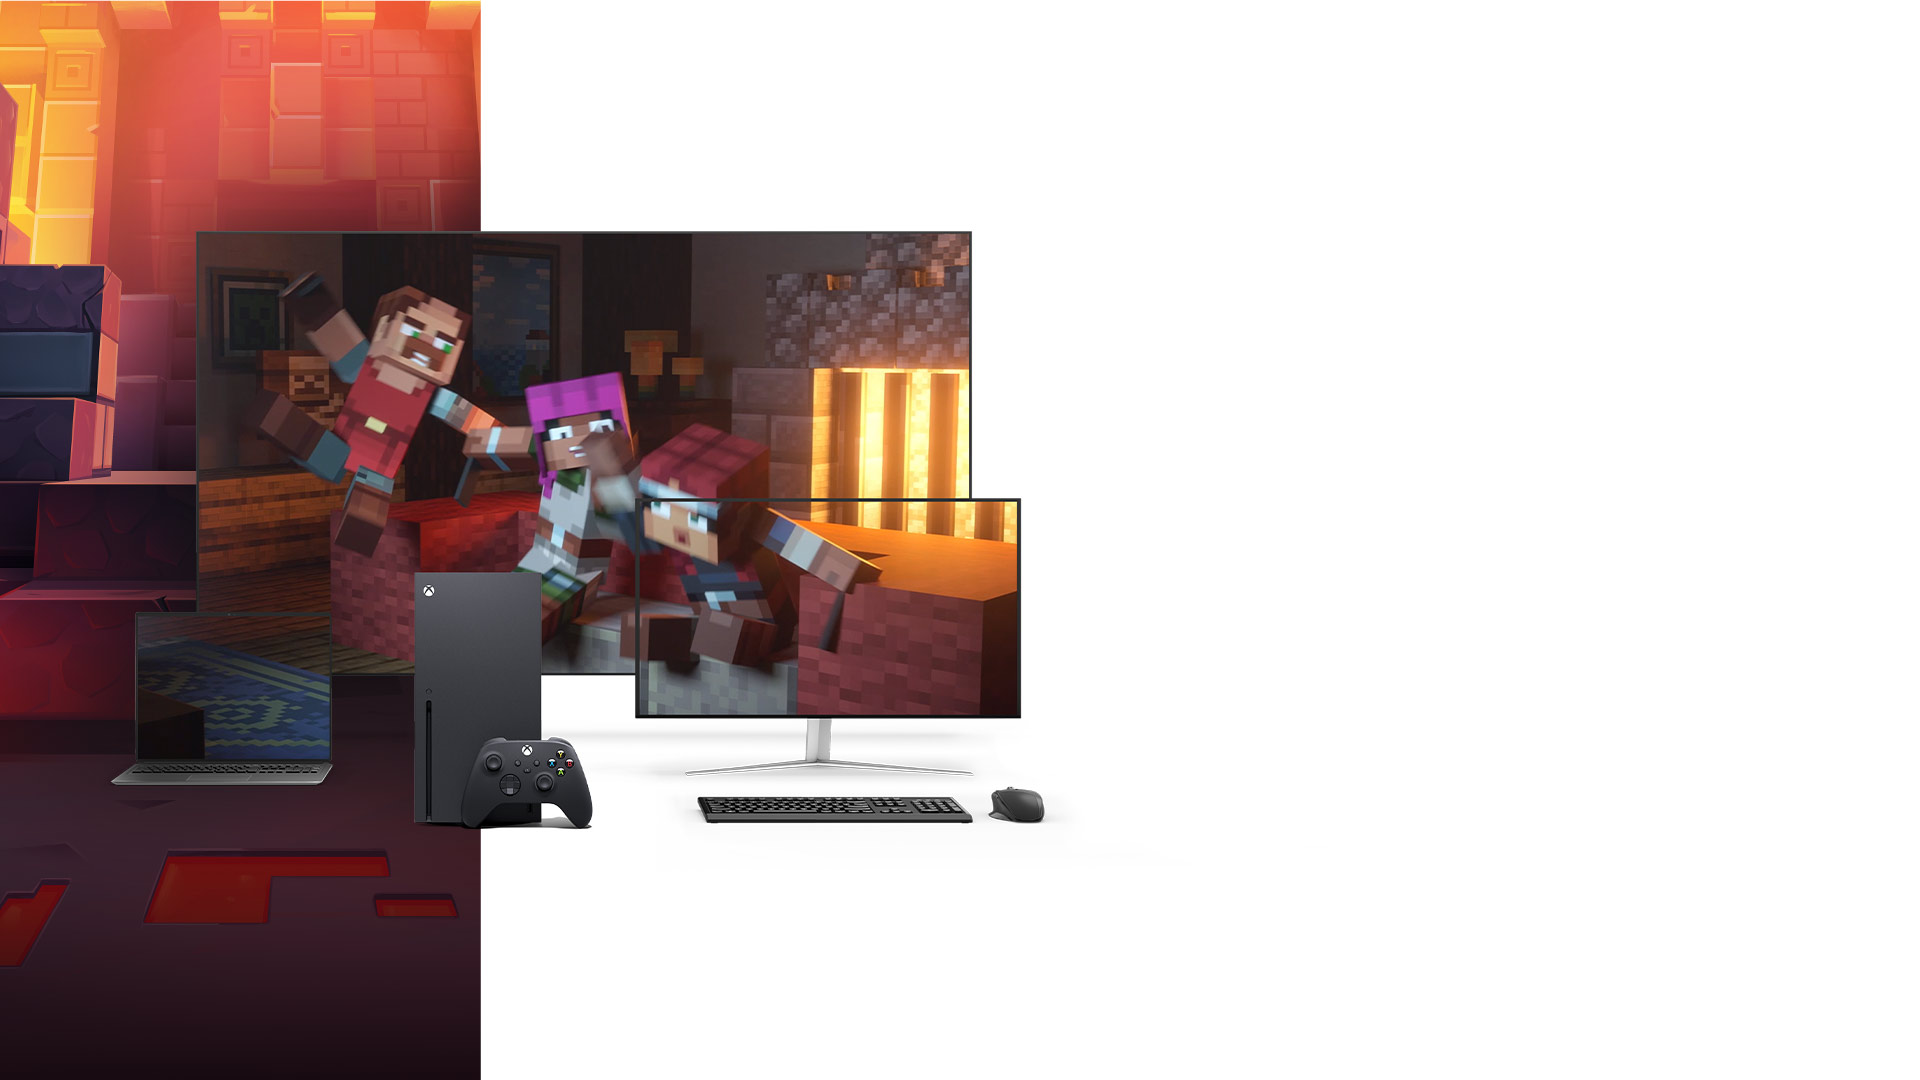 Консоль Xbox Series X рядом с ноутбуком, монитором ПК и телевизором, на которых демонстрируется обложка игры Minecraft Dungeons